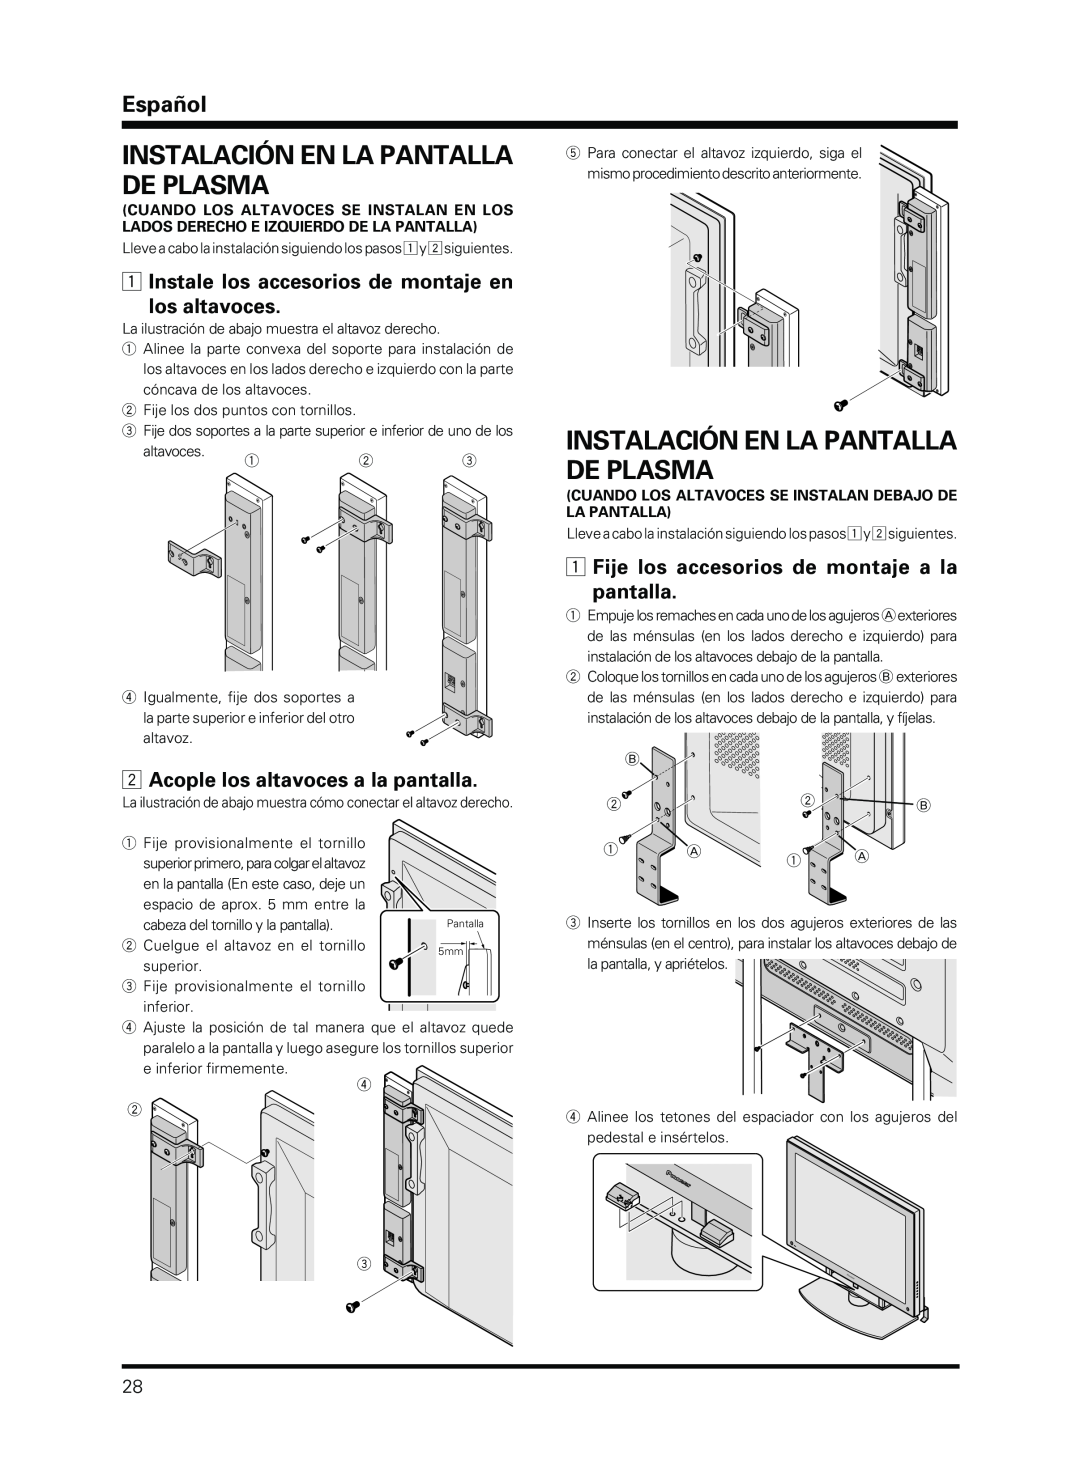 Pioneer PDP-S13-LR manual Instalación En La Pantalla De Plasma, Instale los accesorios de montaje en los altavoces, Español 